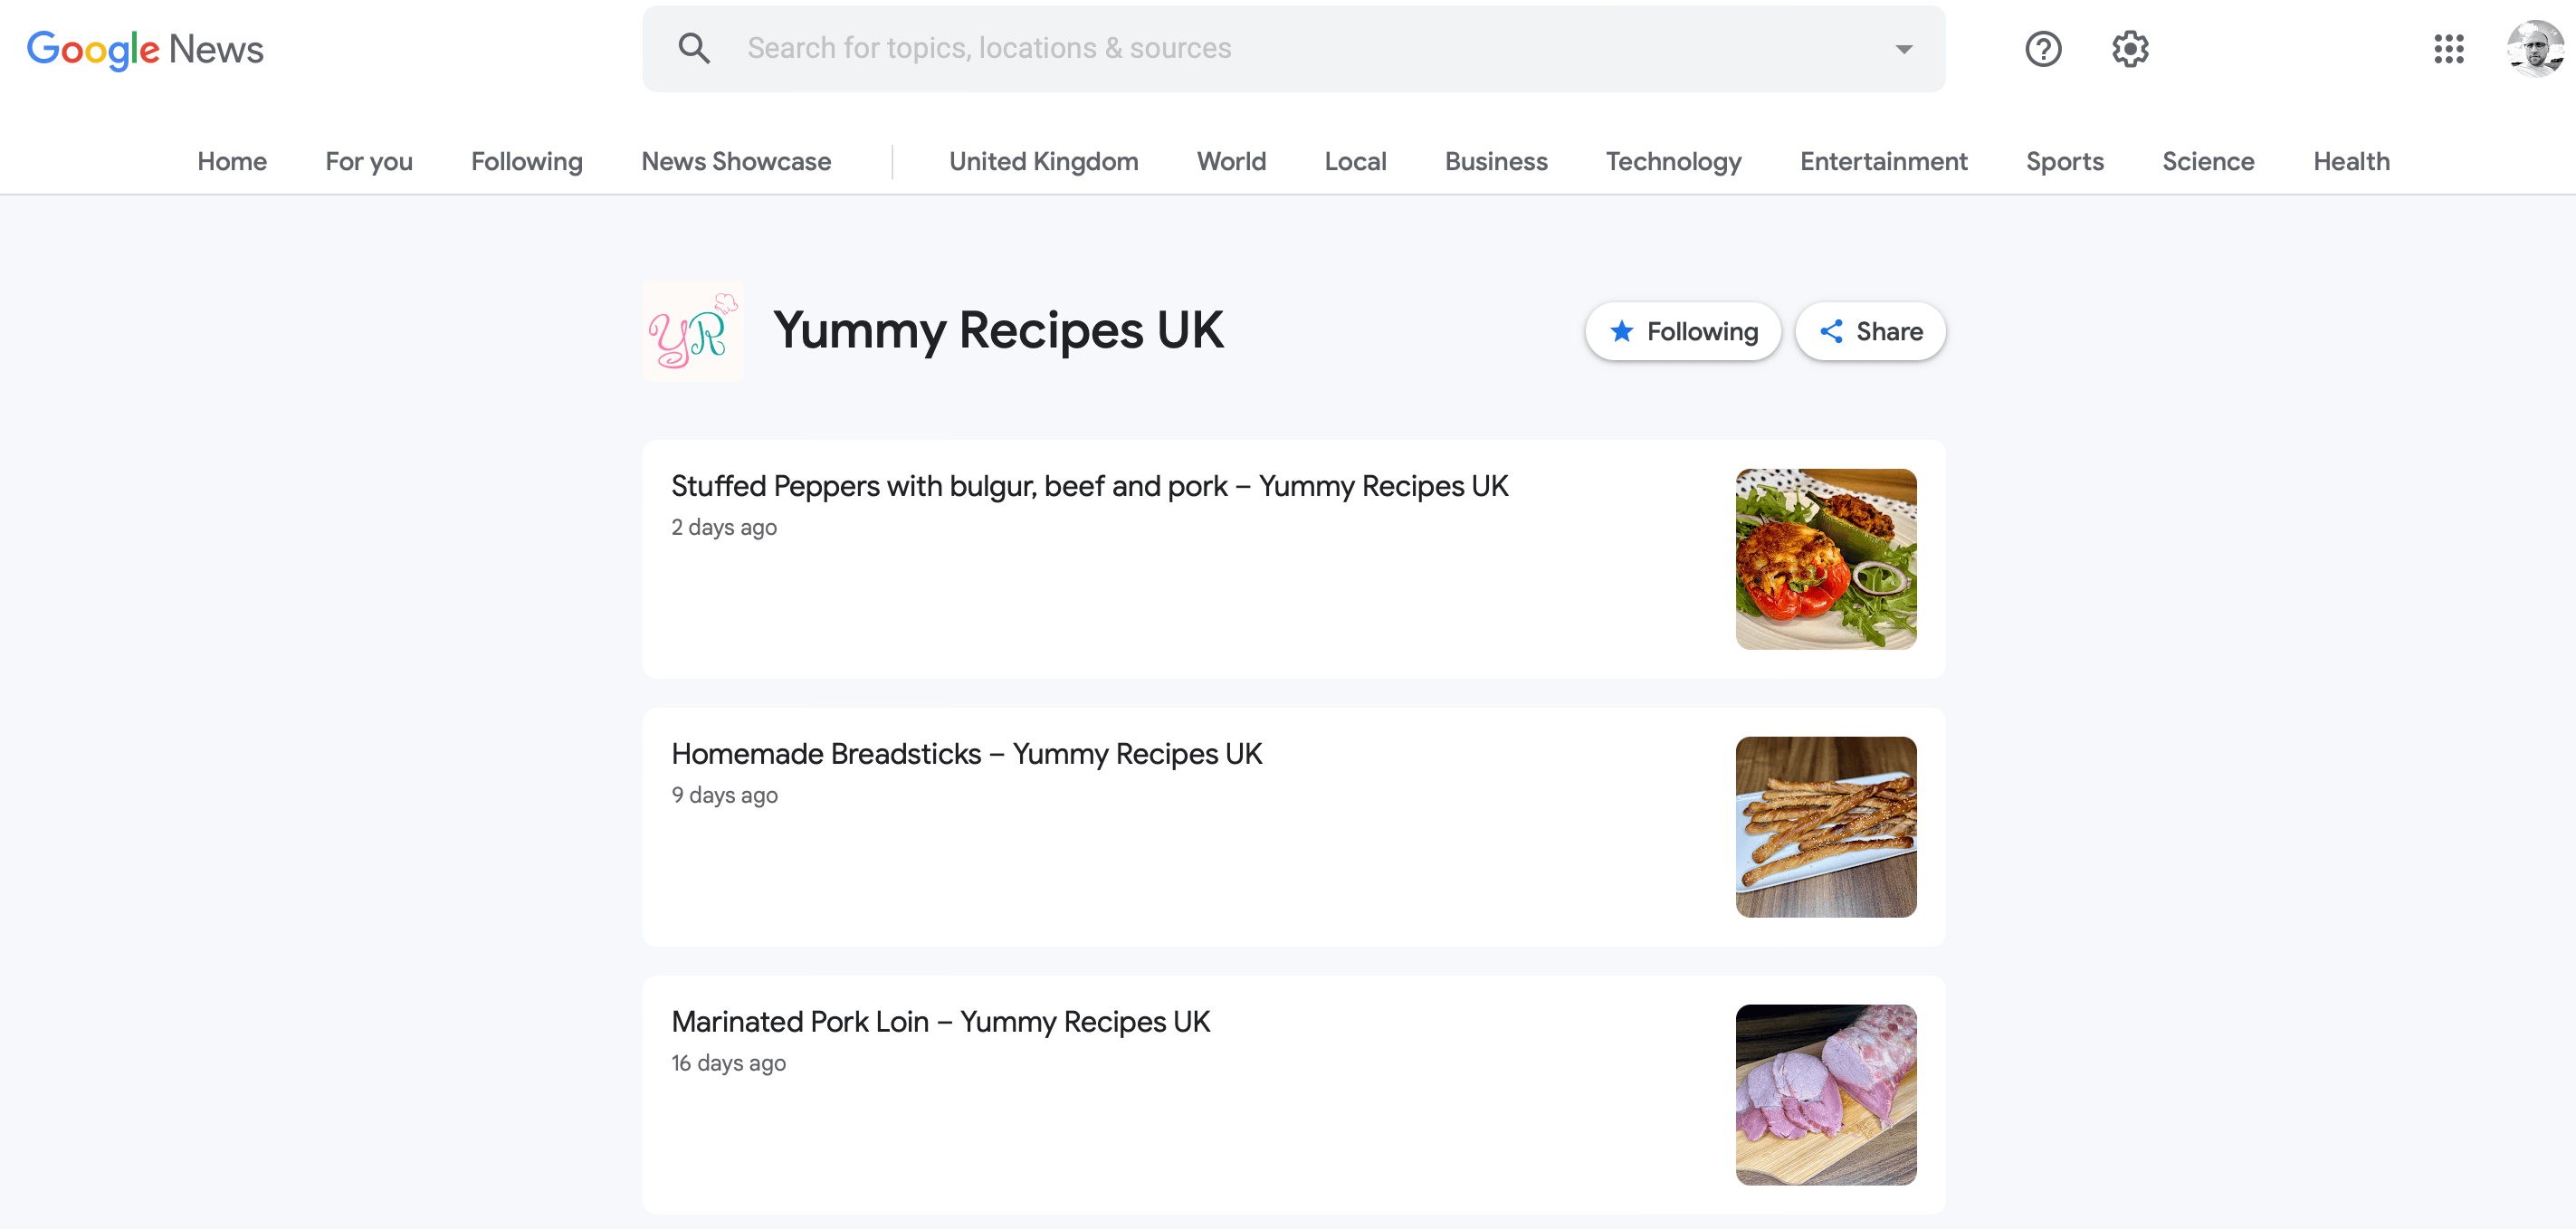 Wiadomości Google - Źródło - Yummy Recipes UK